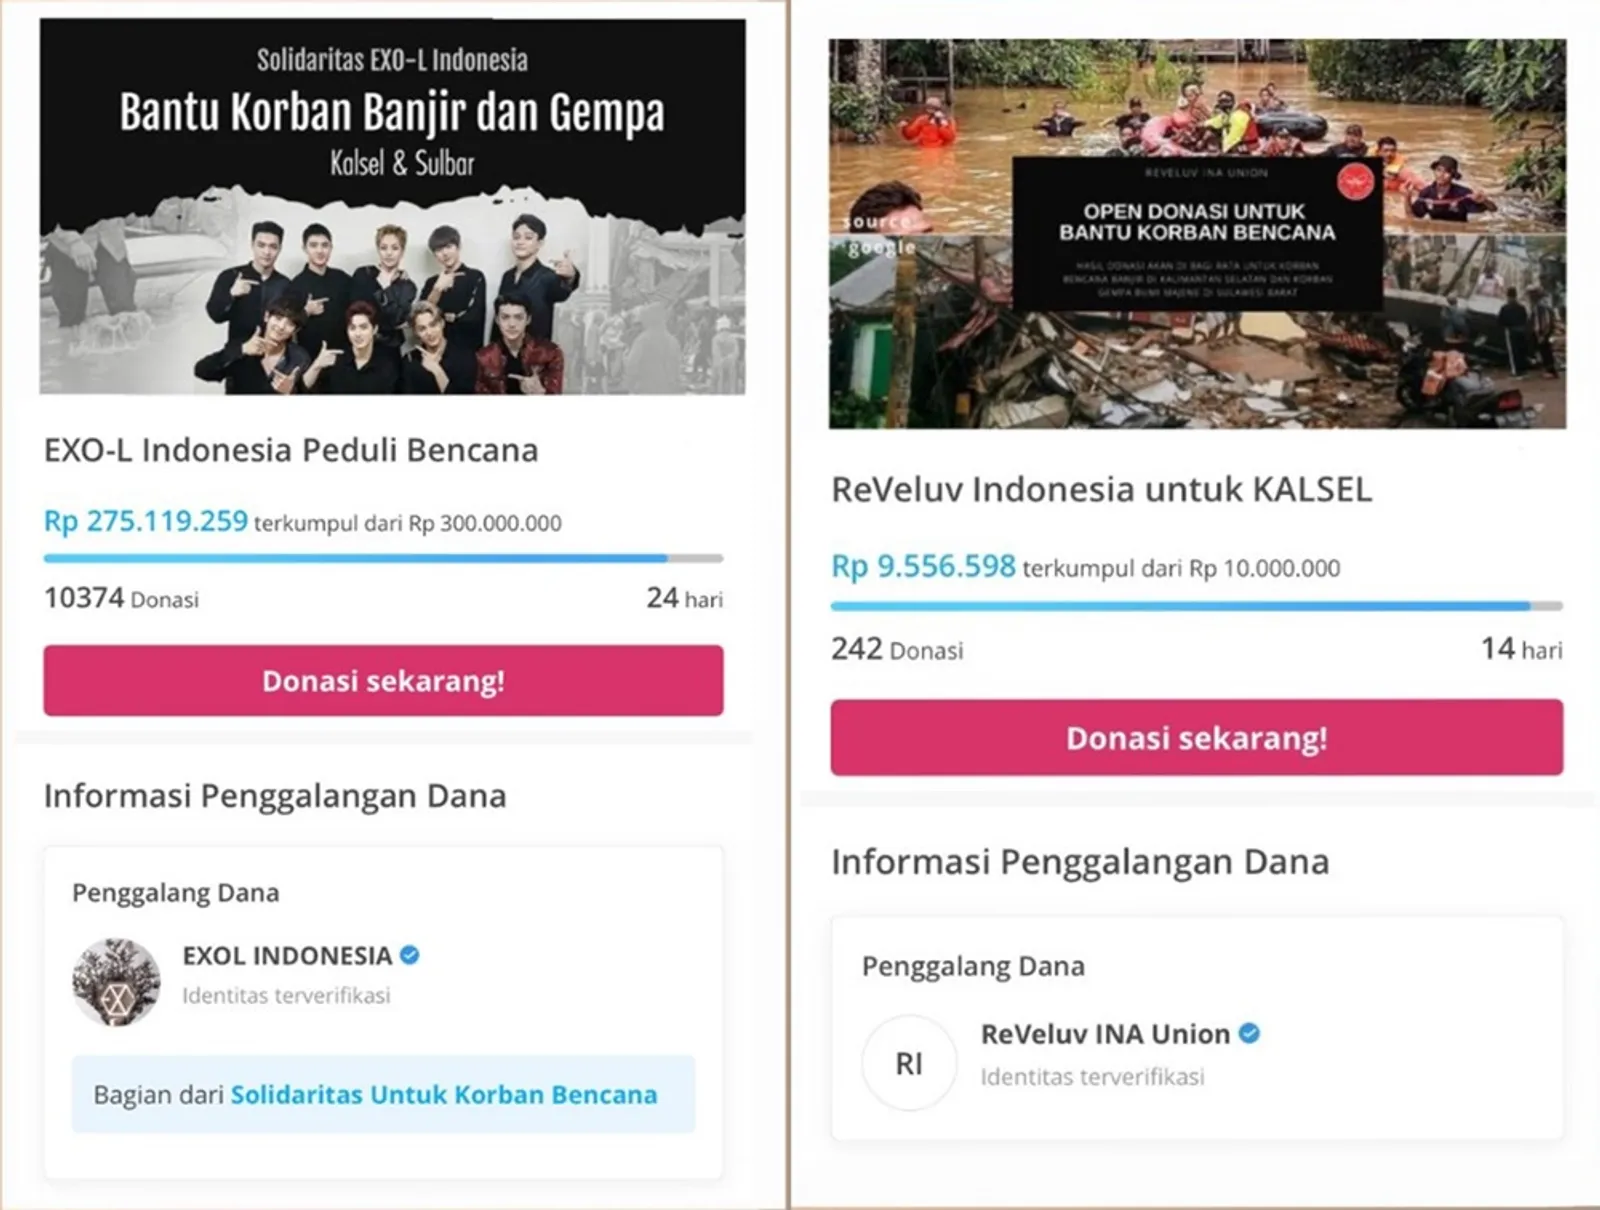 Ikuti Jejak Idola, 16 Fanbase Kpop Galang Dana Bencana untuk Indonesia